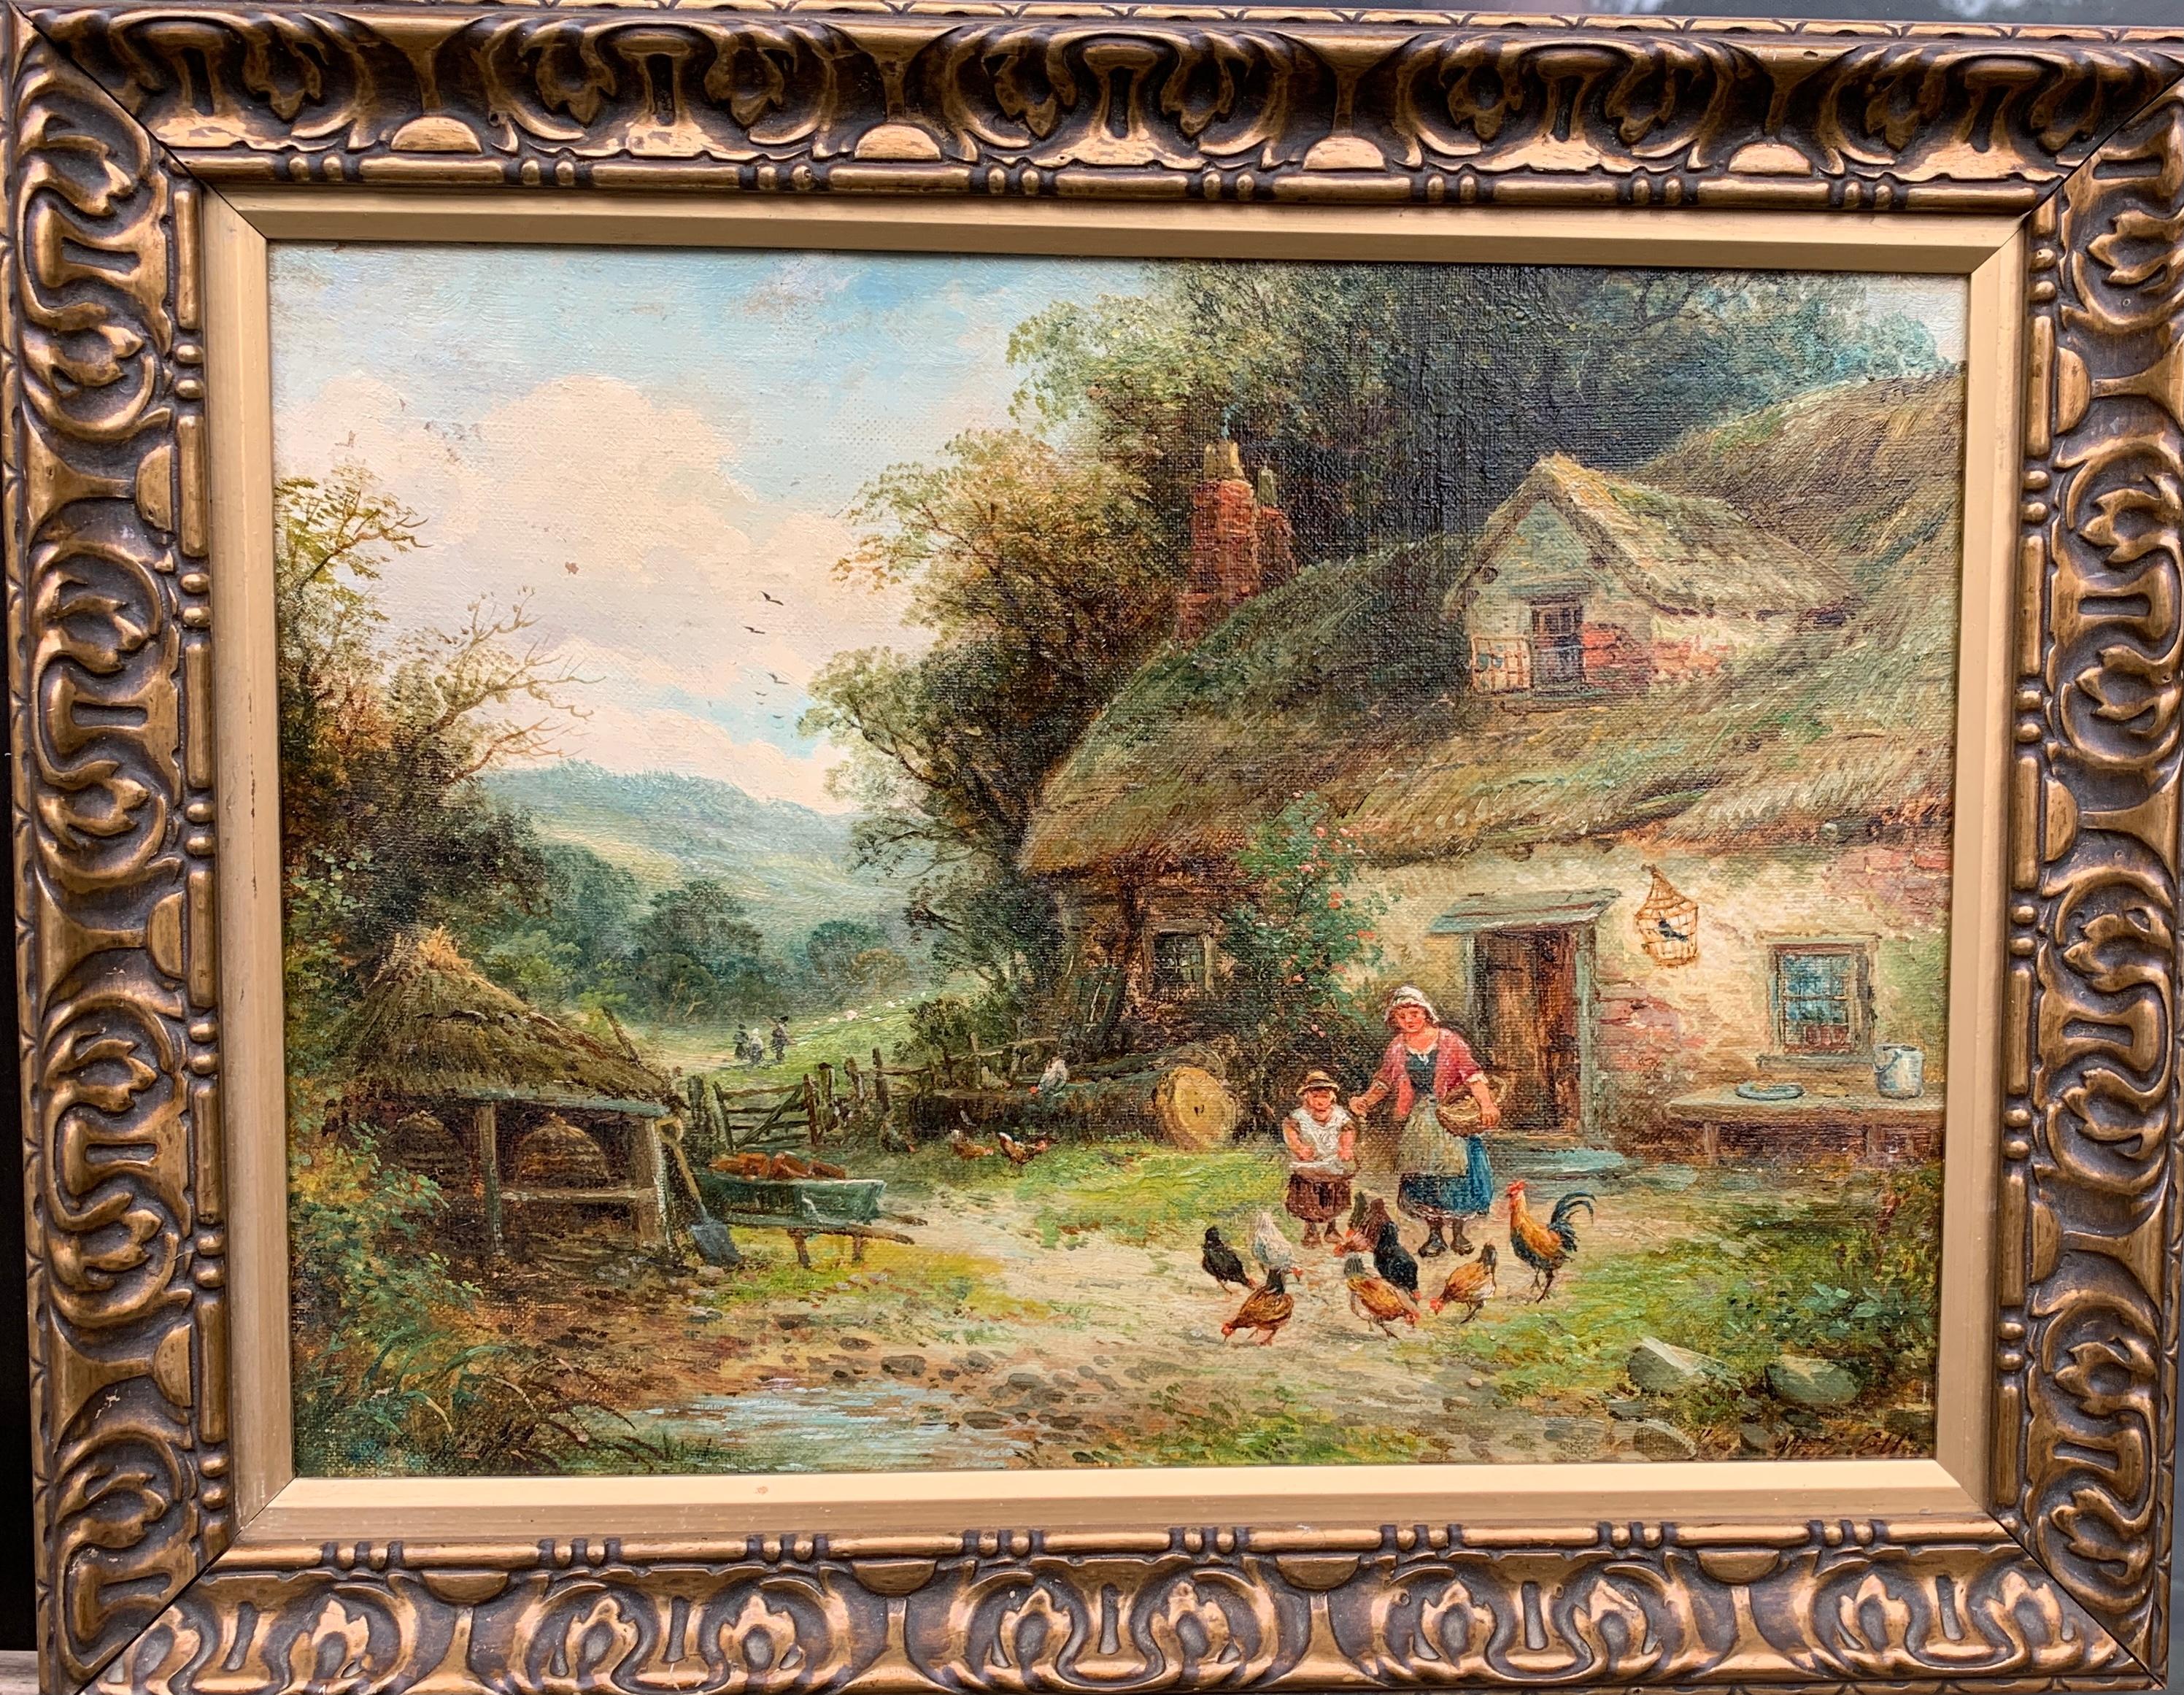 Landscape Painting Walter Ellis - Paysage de cottage anglais du 19ème siècle avec mère et enfant nourrissant des poulets